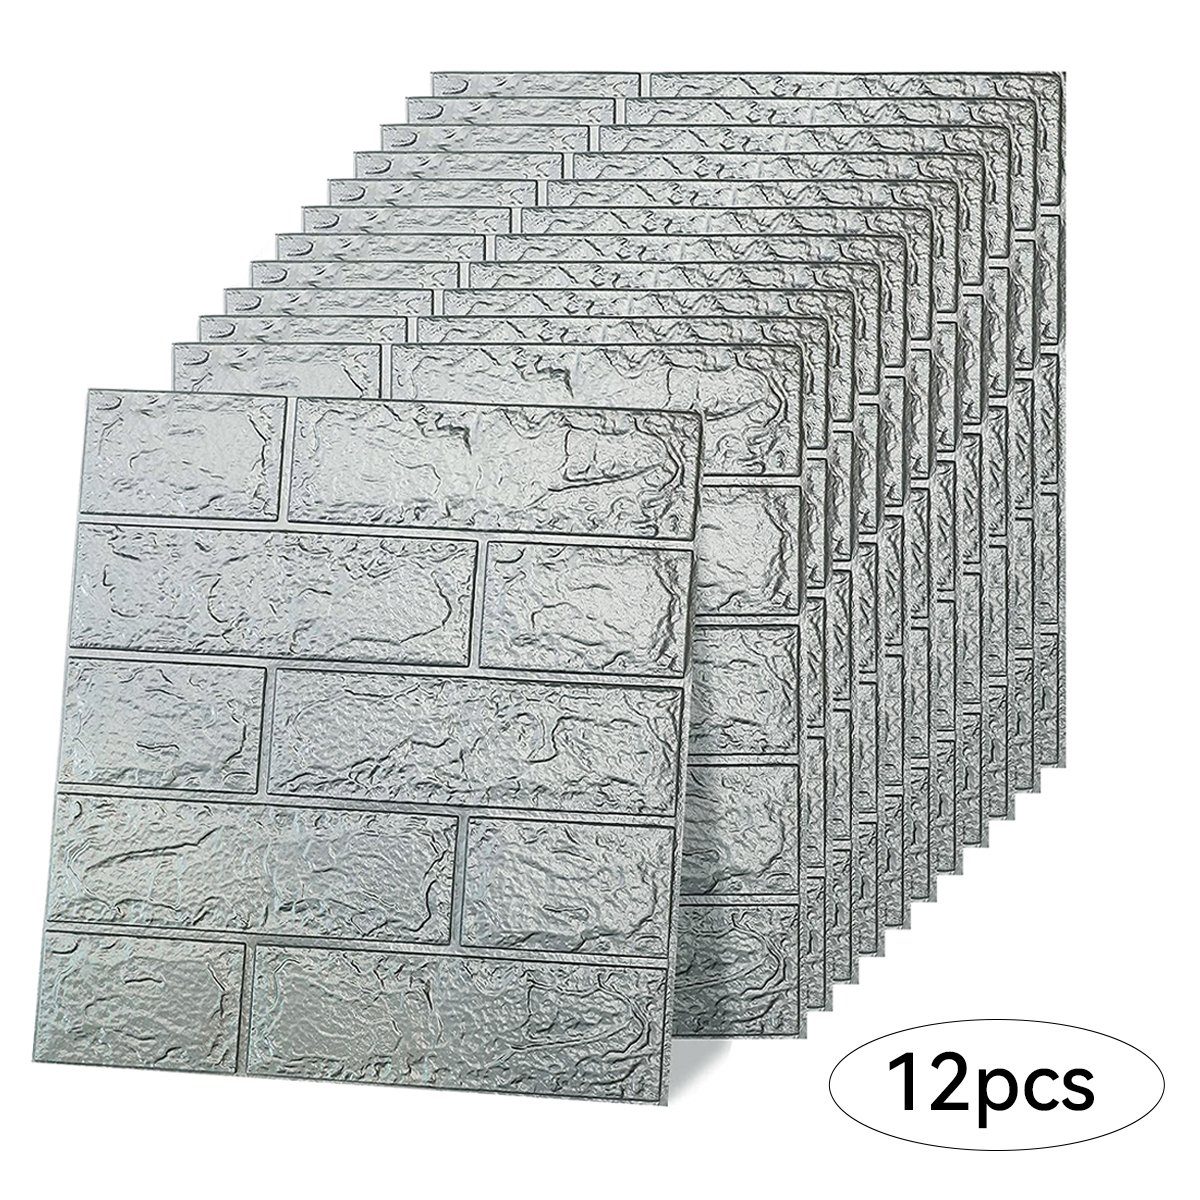 Novzep Wandpaneel 10/12 PCS 3D Wandpaneele 35x38.5x5cm, Wasserfest, selbstklebend, (12-tlg) Grau